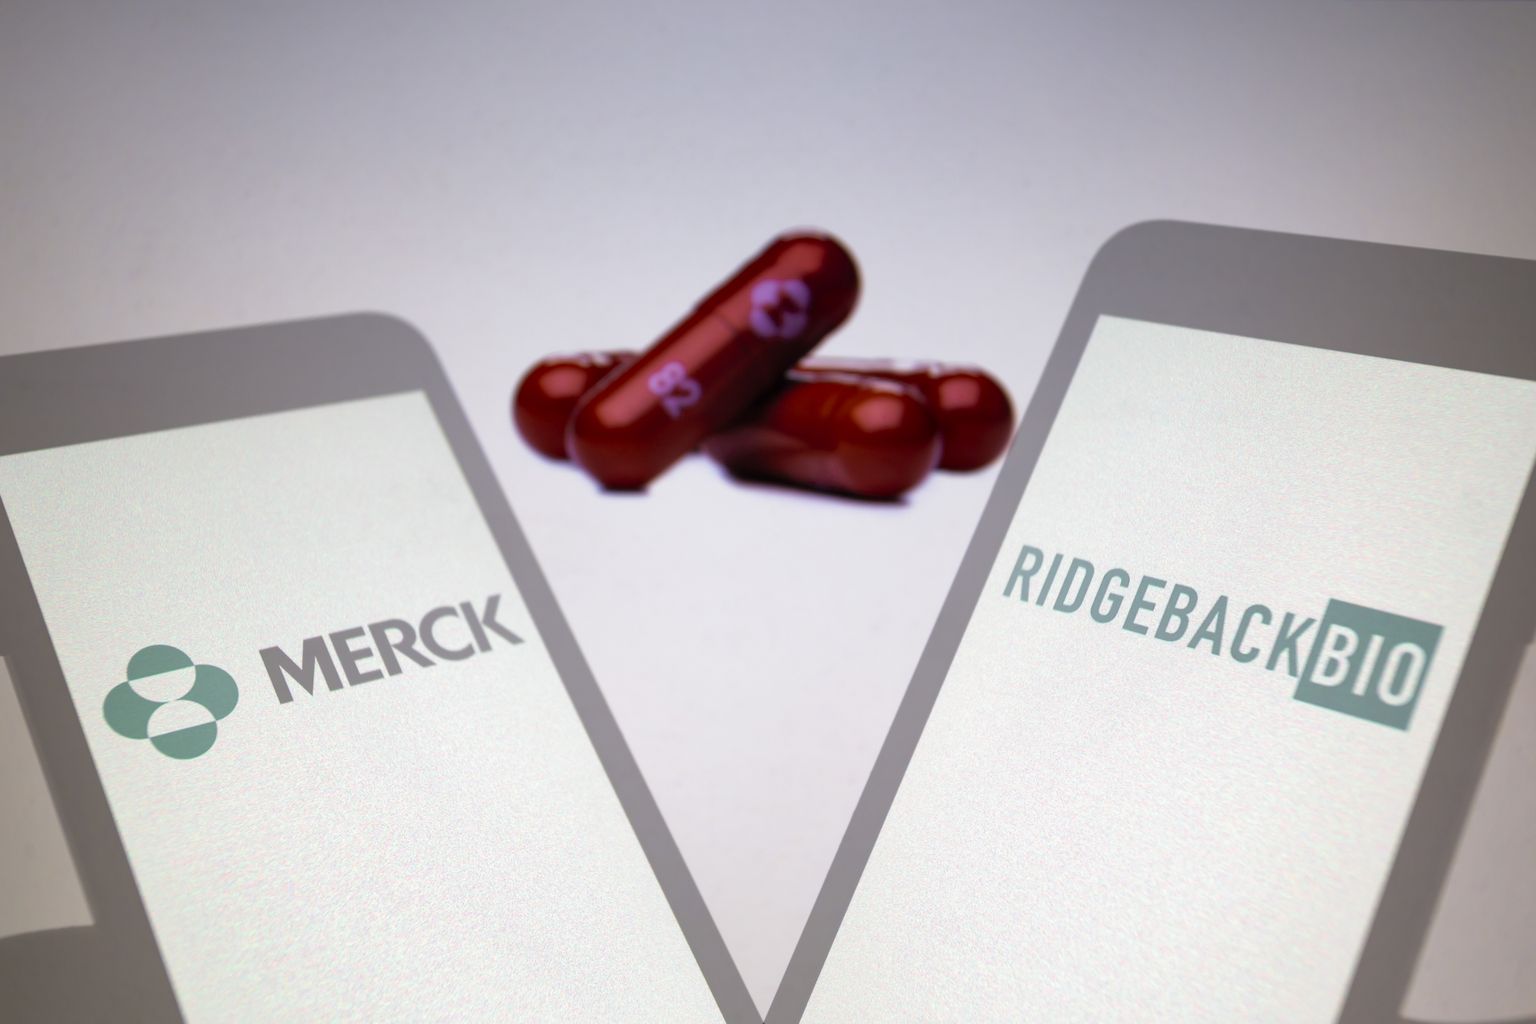 Molnupiraviiri (Lagevrio) arendaja on Merck Sharp & Dohme koostöös ettevõttega Ridgeback Biotherapeutics.